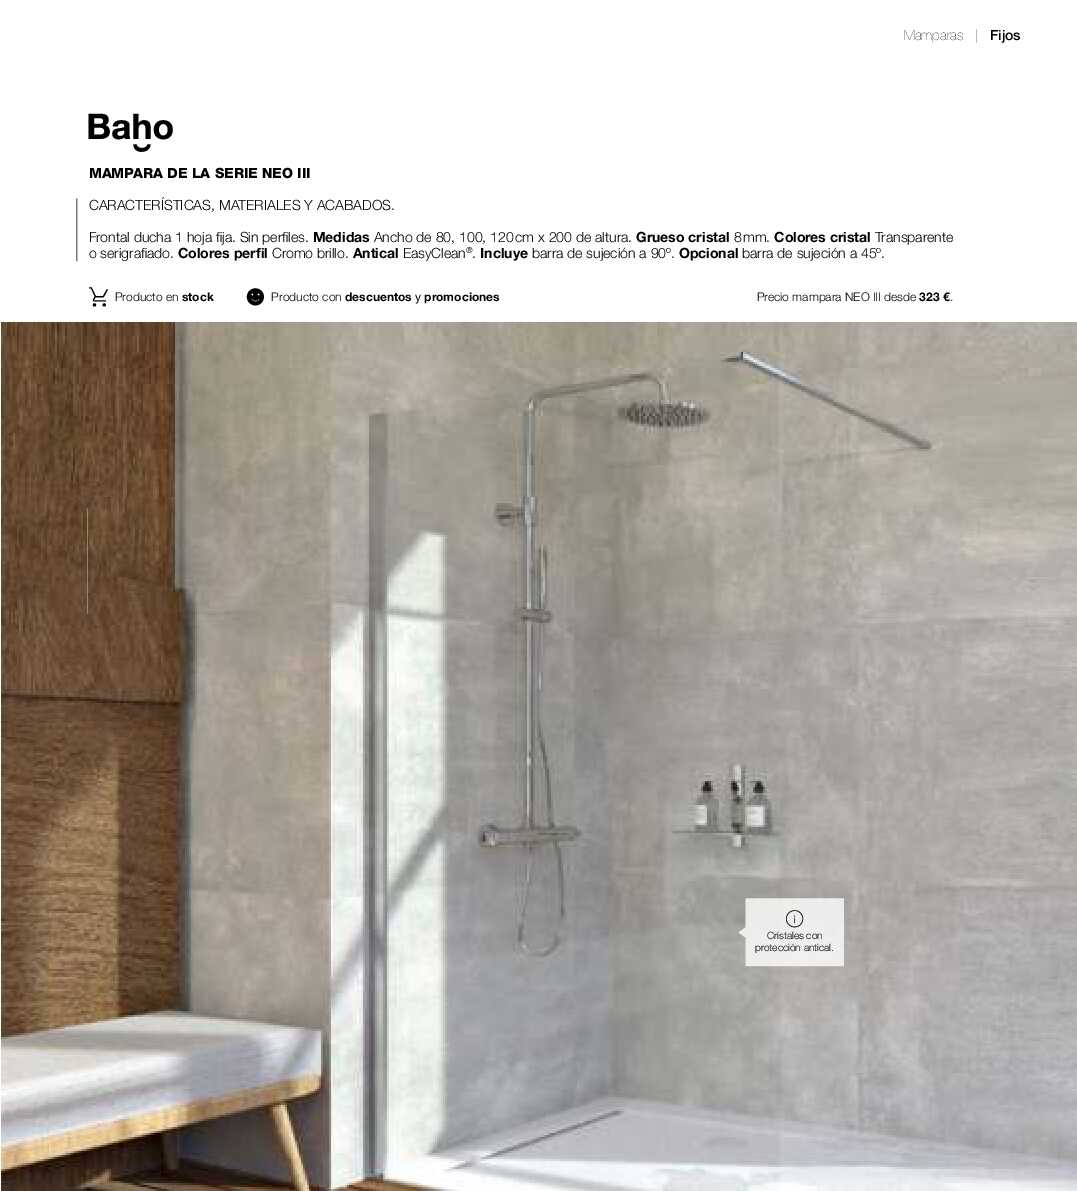 Catálogo de baños Gamma. Página 254